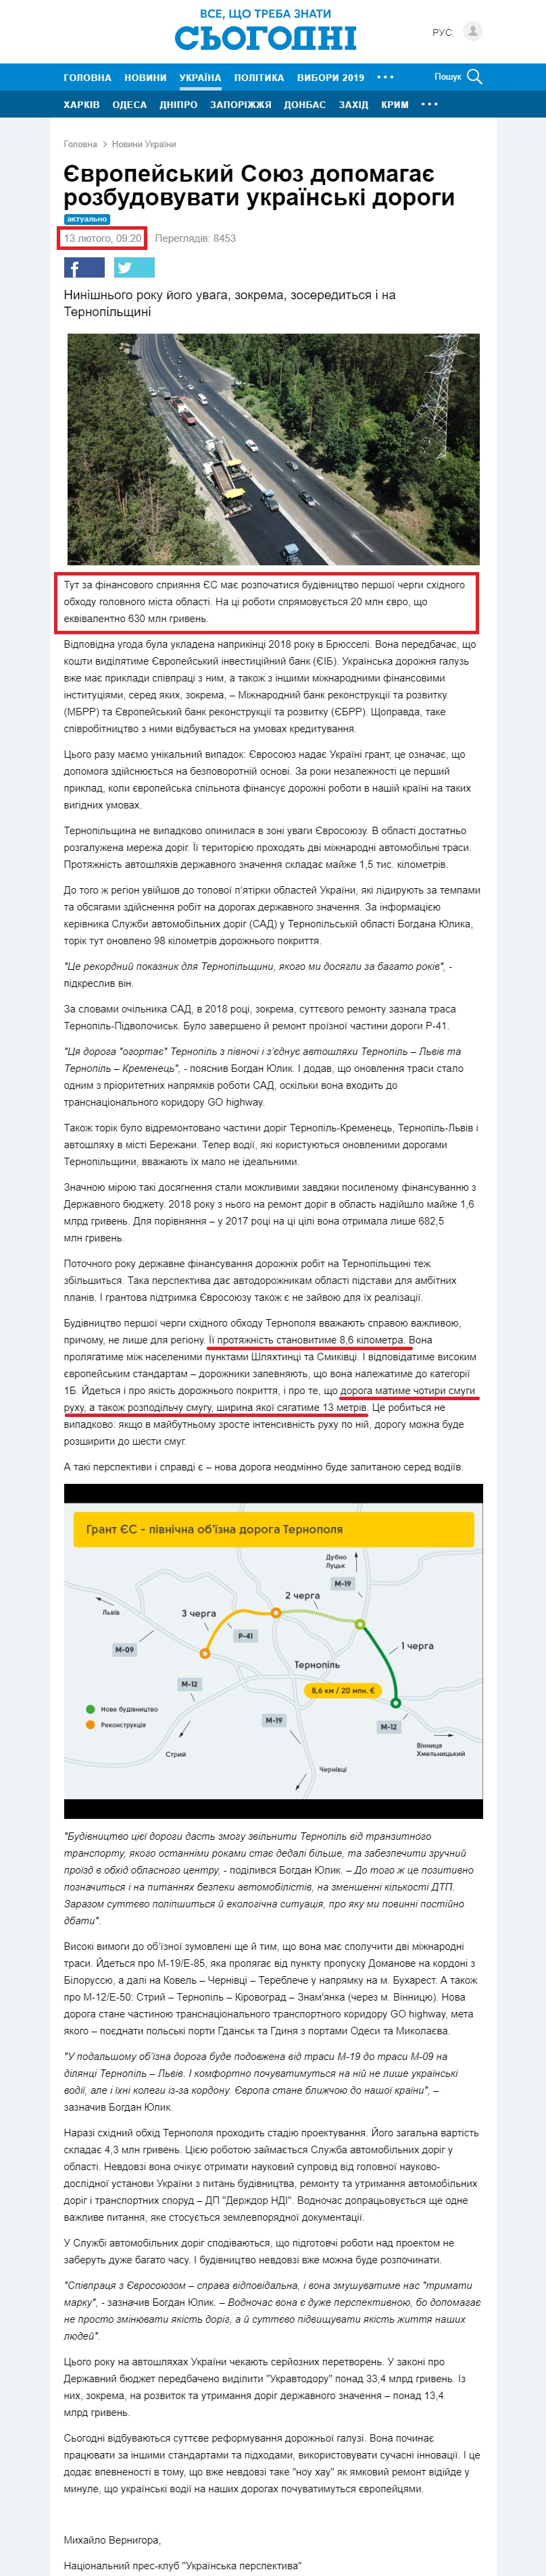 https://ukr.segodnya.ua/ukraine/evropeyskiy-soyuz-pomogaet-razvivat-ukrainskie-dorogi-1220510.html